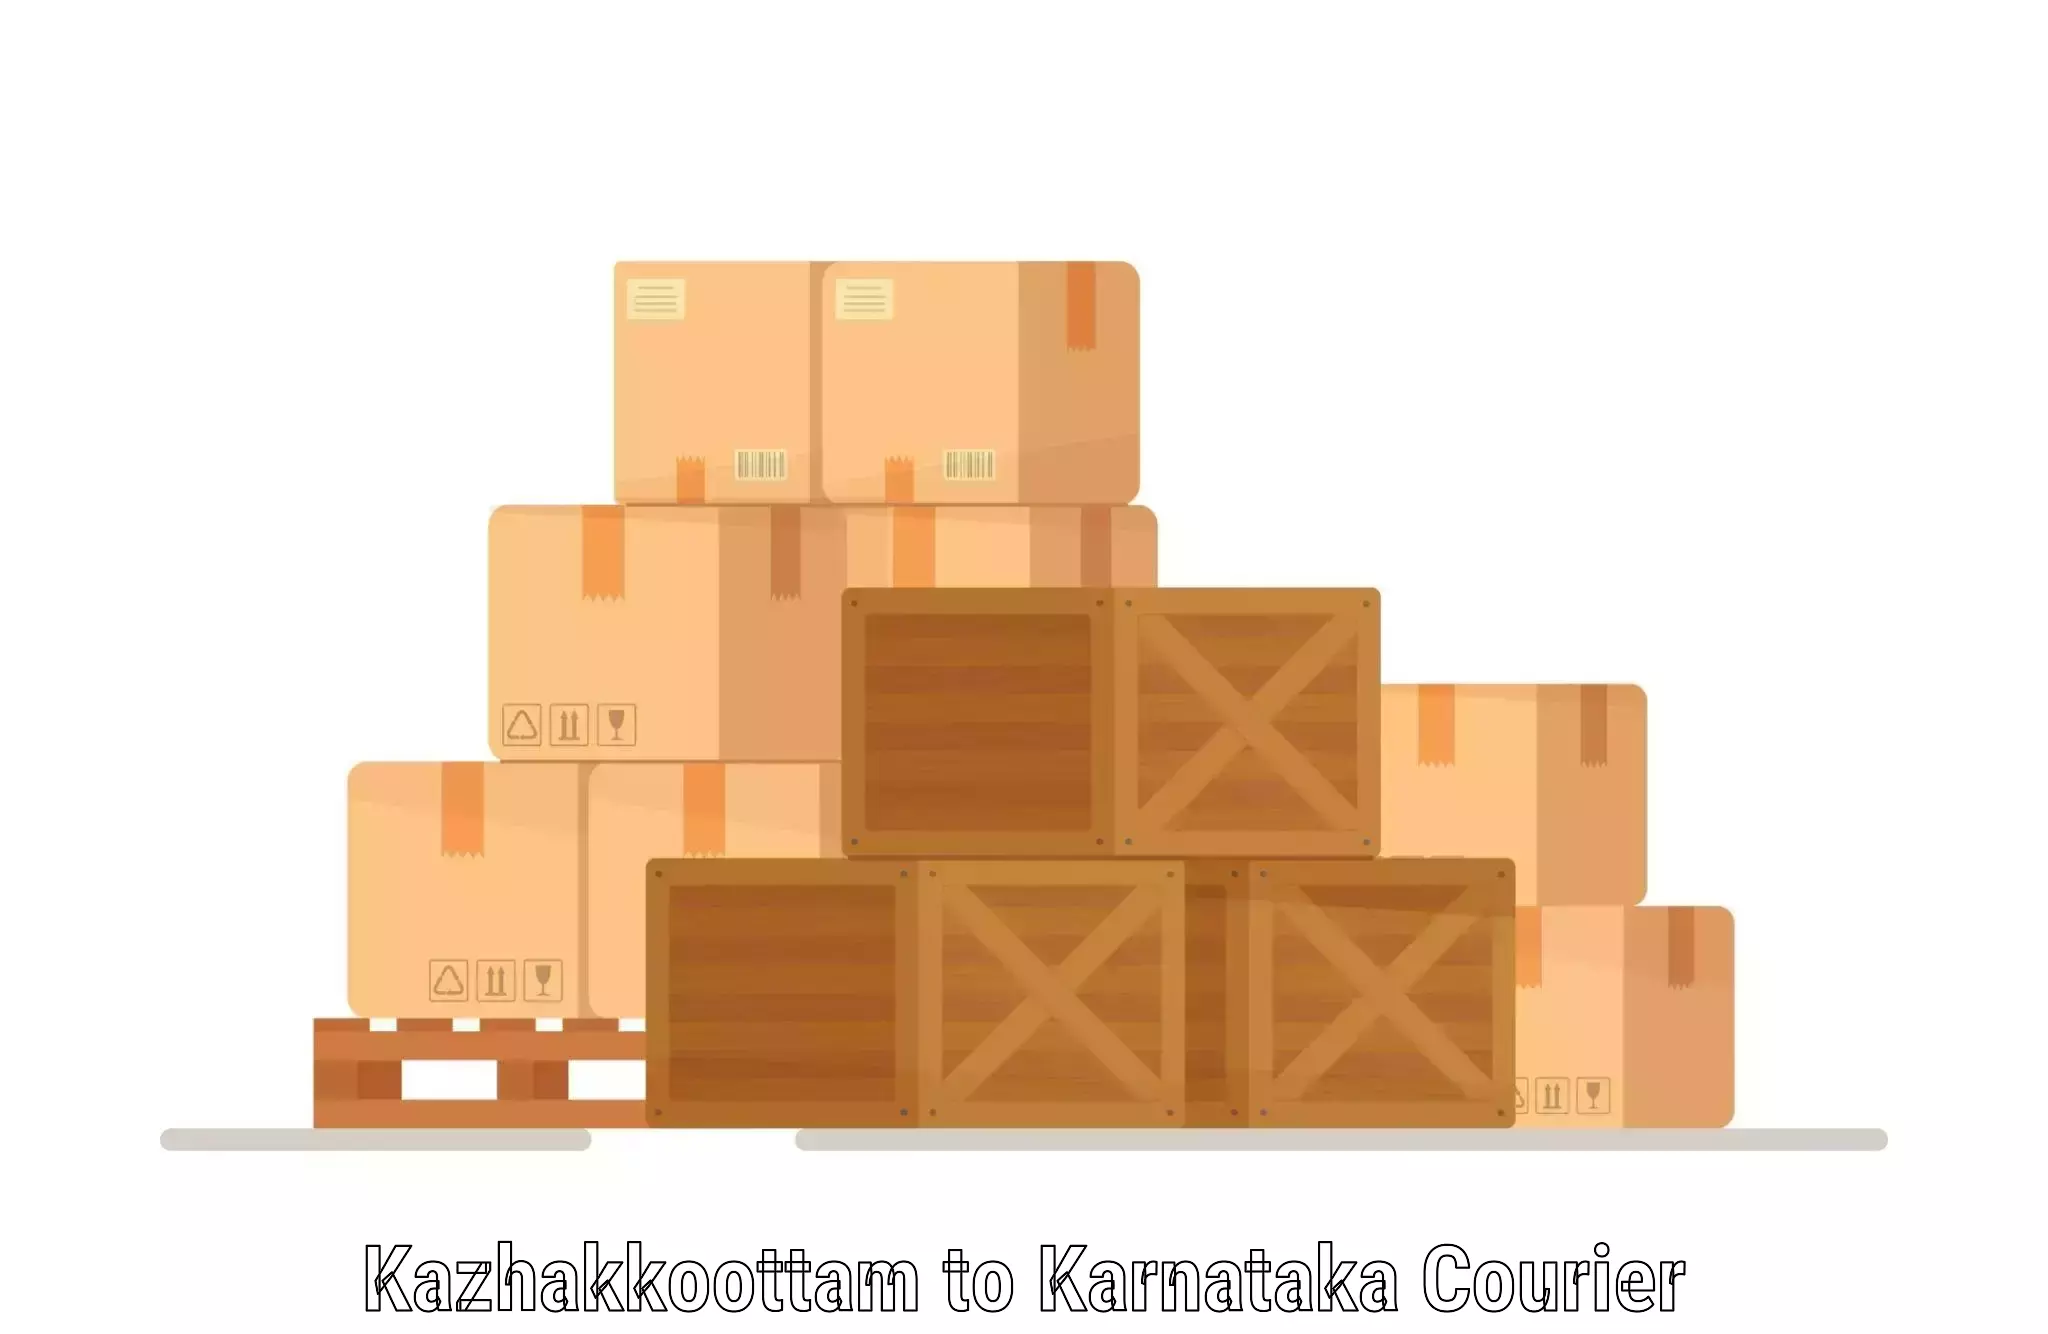 Cost-effective courier solutions Kazhakkoottam to Ranebennur